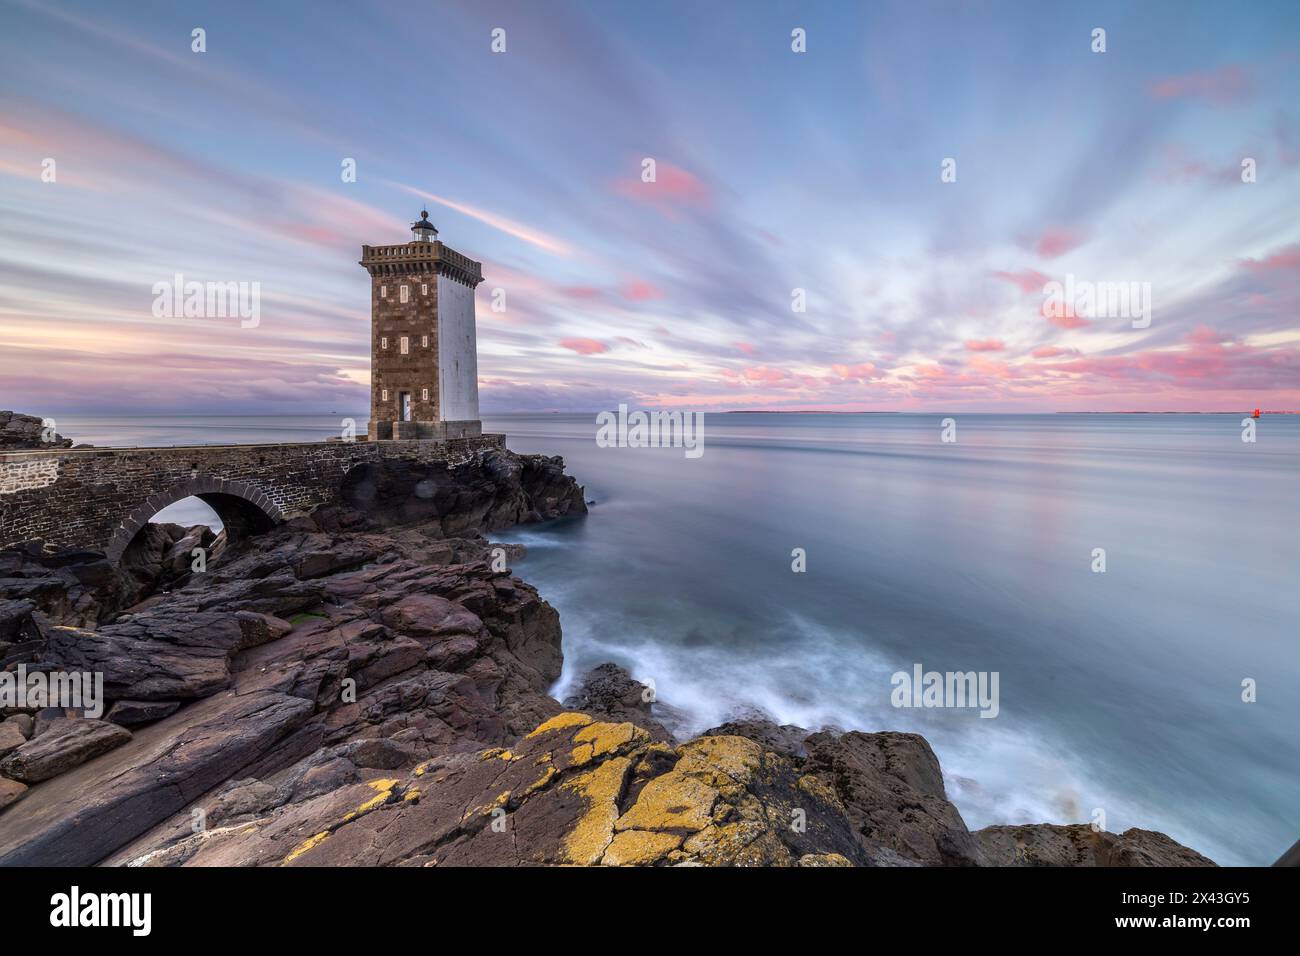 Europe, France, Bretagne, lever de soleil au phare de Kermorvan Banque D'Images